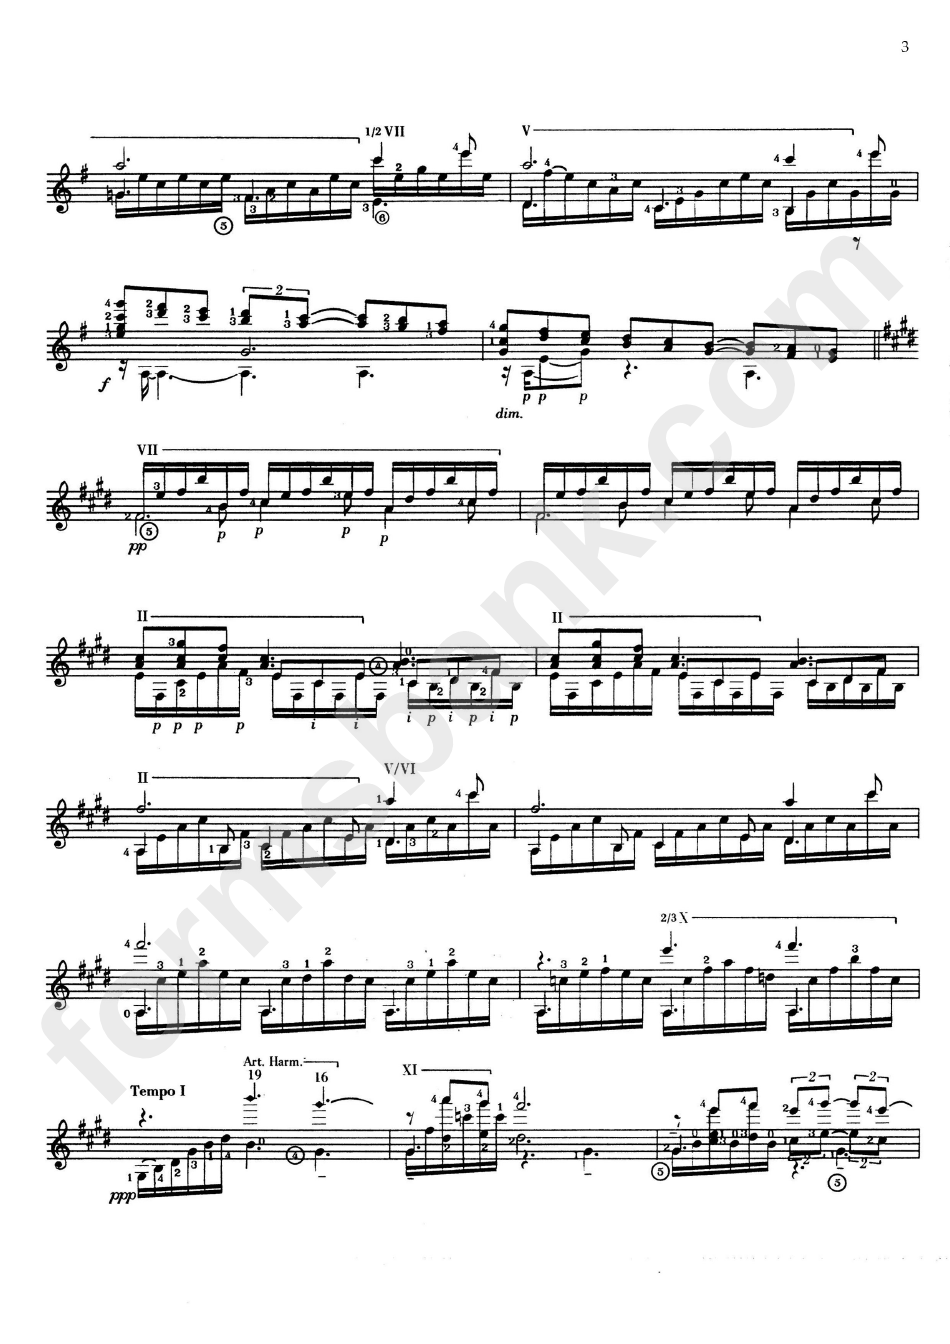 Claude Debussy - Clair De Lune Sheet Music